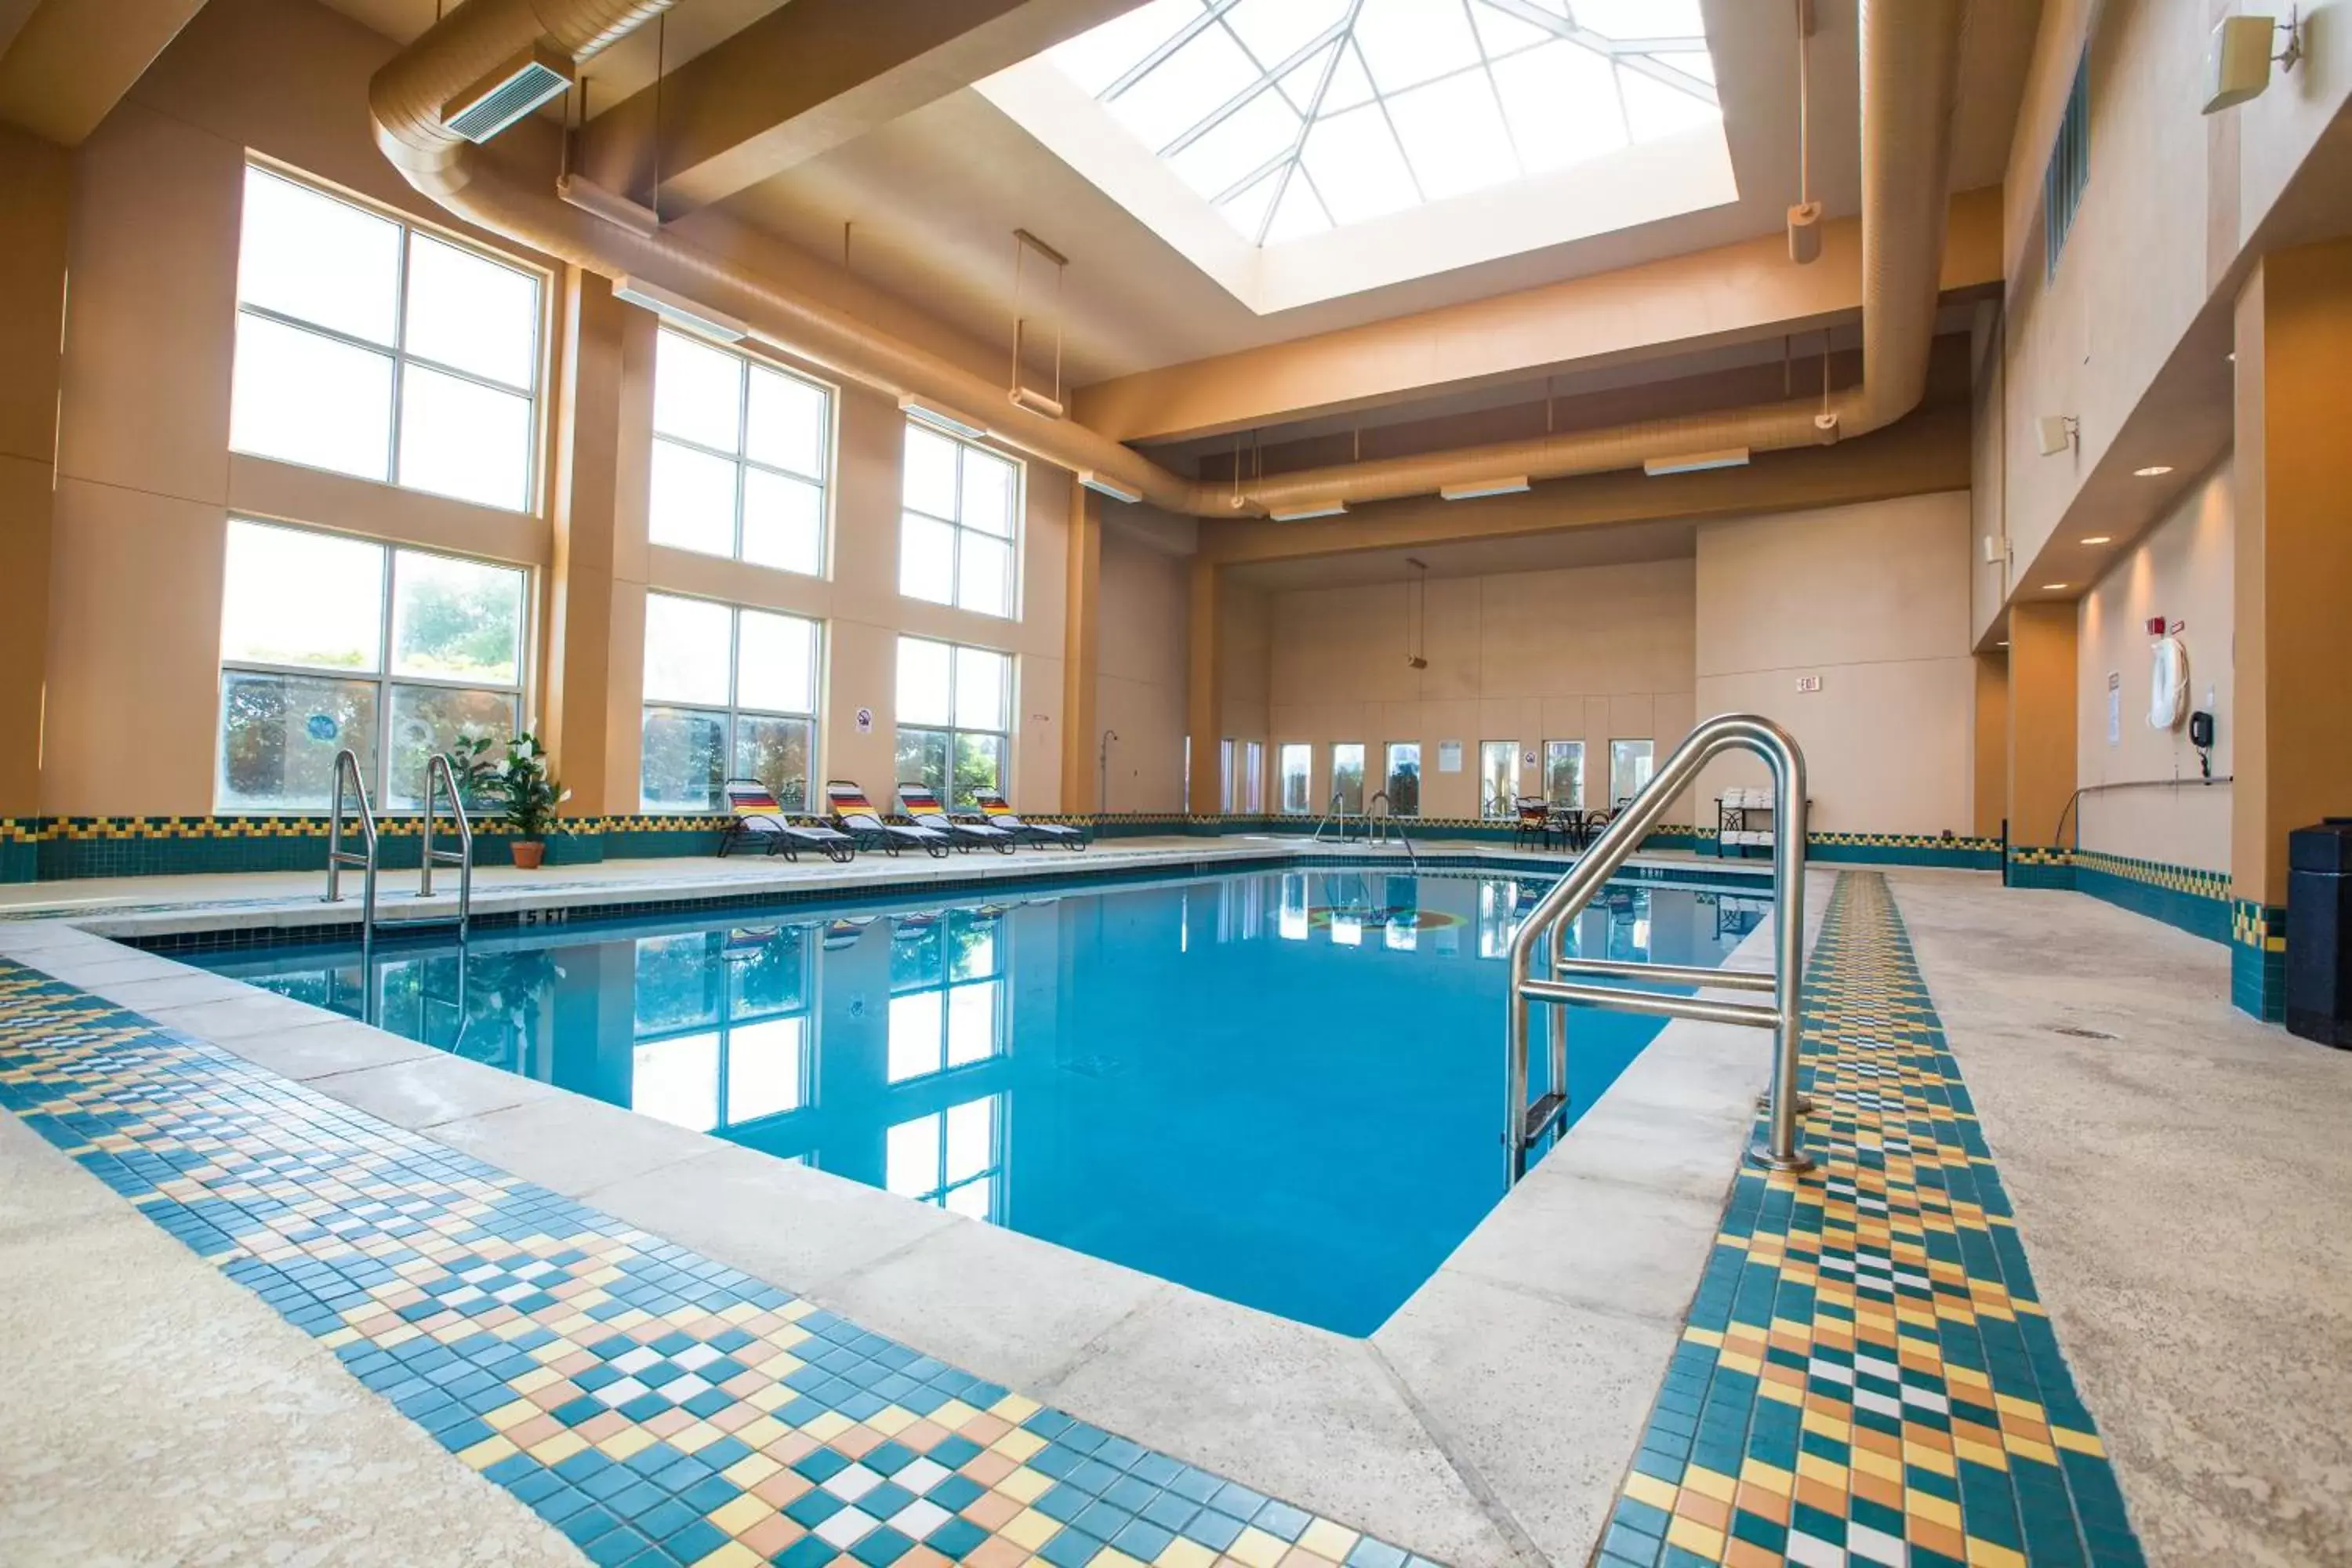 Swimming Pool in Miccosukee Casino & Resort